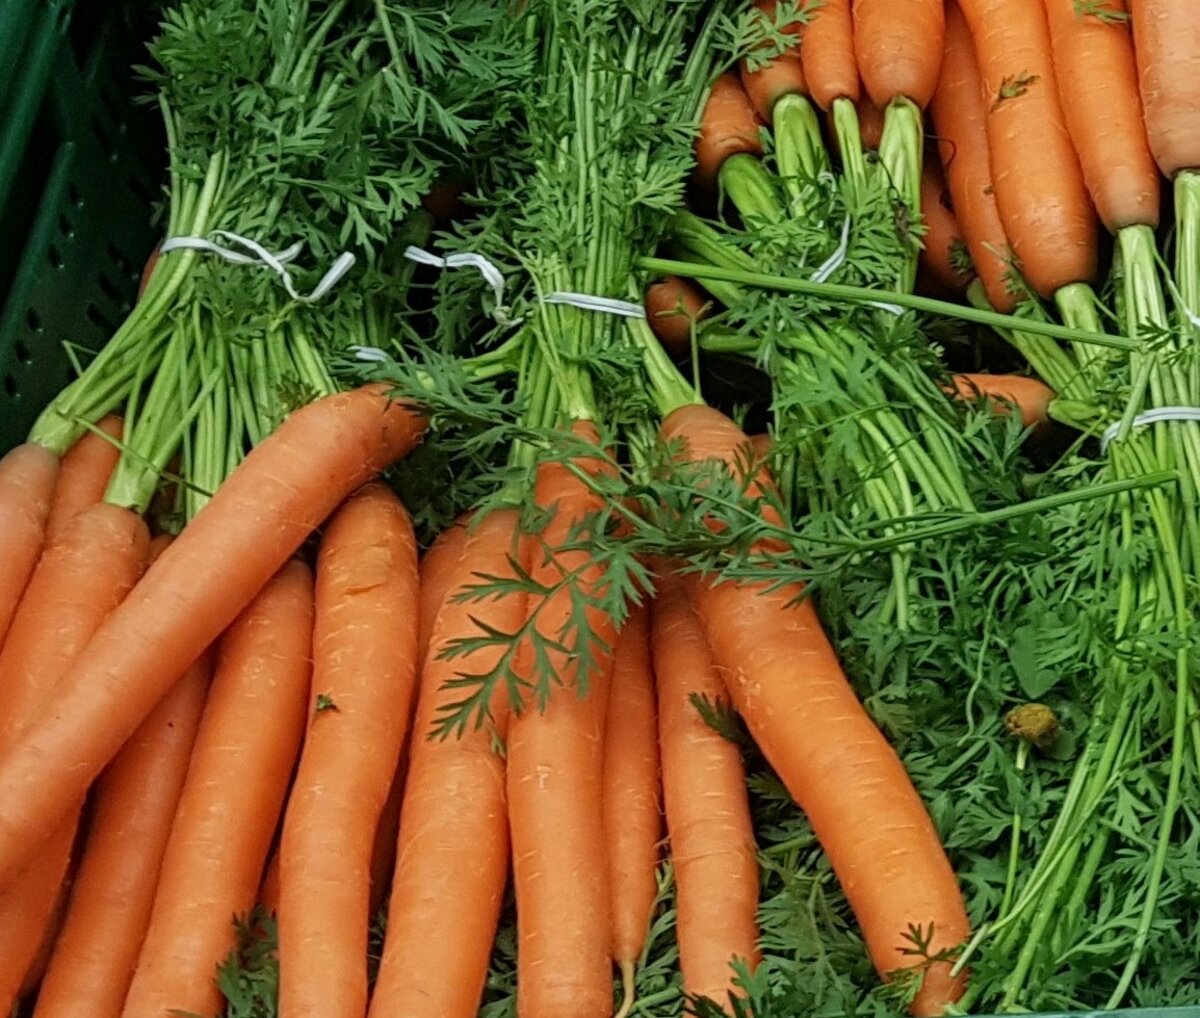 Abfallvermeidung beim Einkaufen – Positivbeispiel: Unverpacktes Gemüse, Karotten, Möhren, loses Gemüse, Vermeidung von Verpackungsmüll